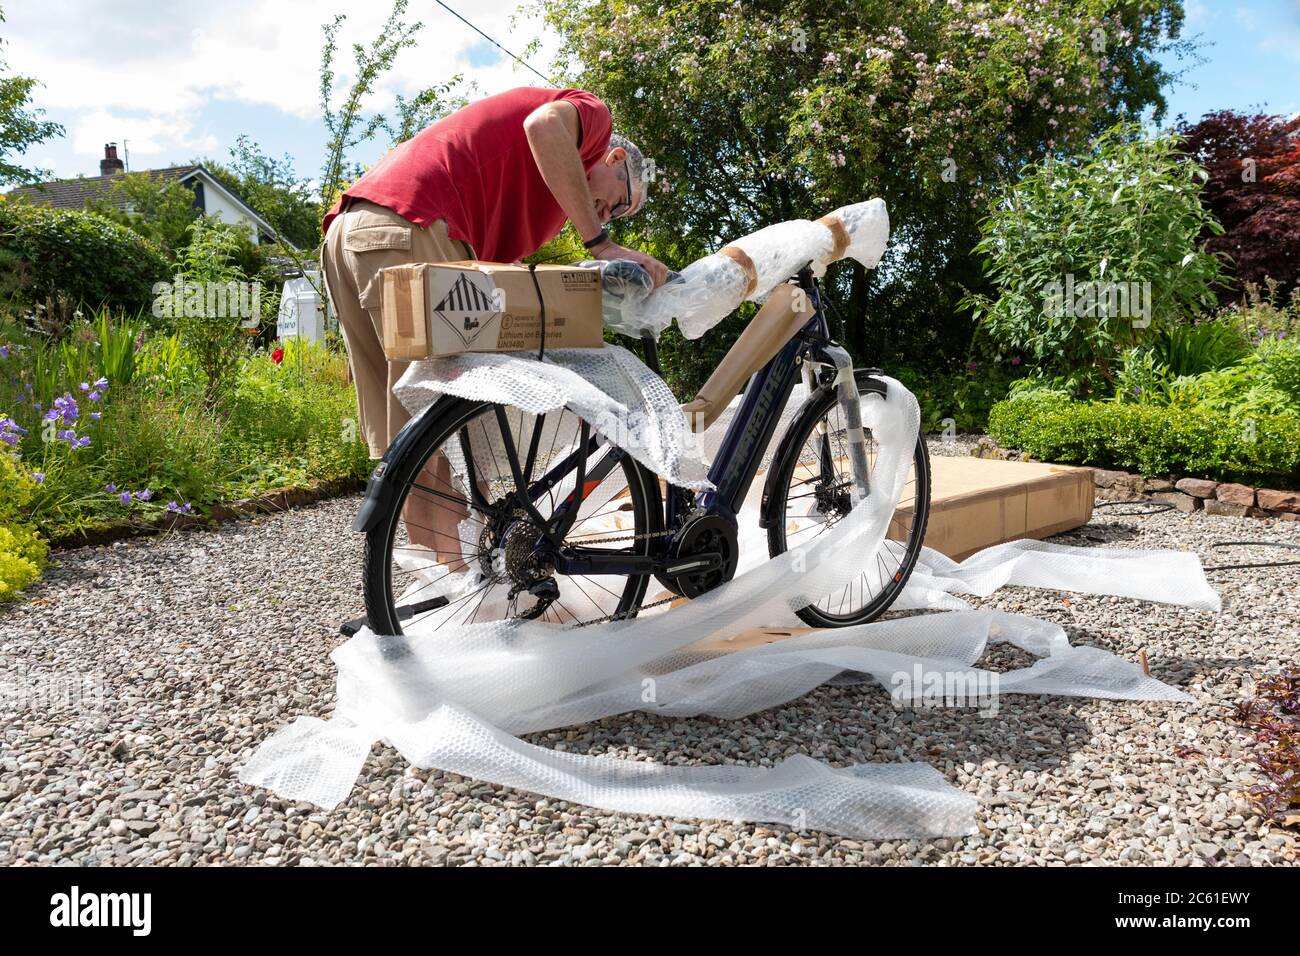 Livraison à domicile de vélo électrique ebike commandé en ligne pendant le verrouillage du coronavirus - vélo sorti de la boîte à vélo et de déballer le film à bulles - Royaume-Uni Banque D'Images